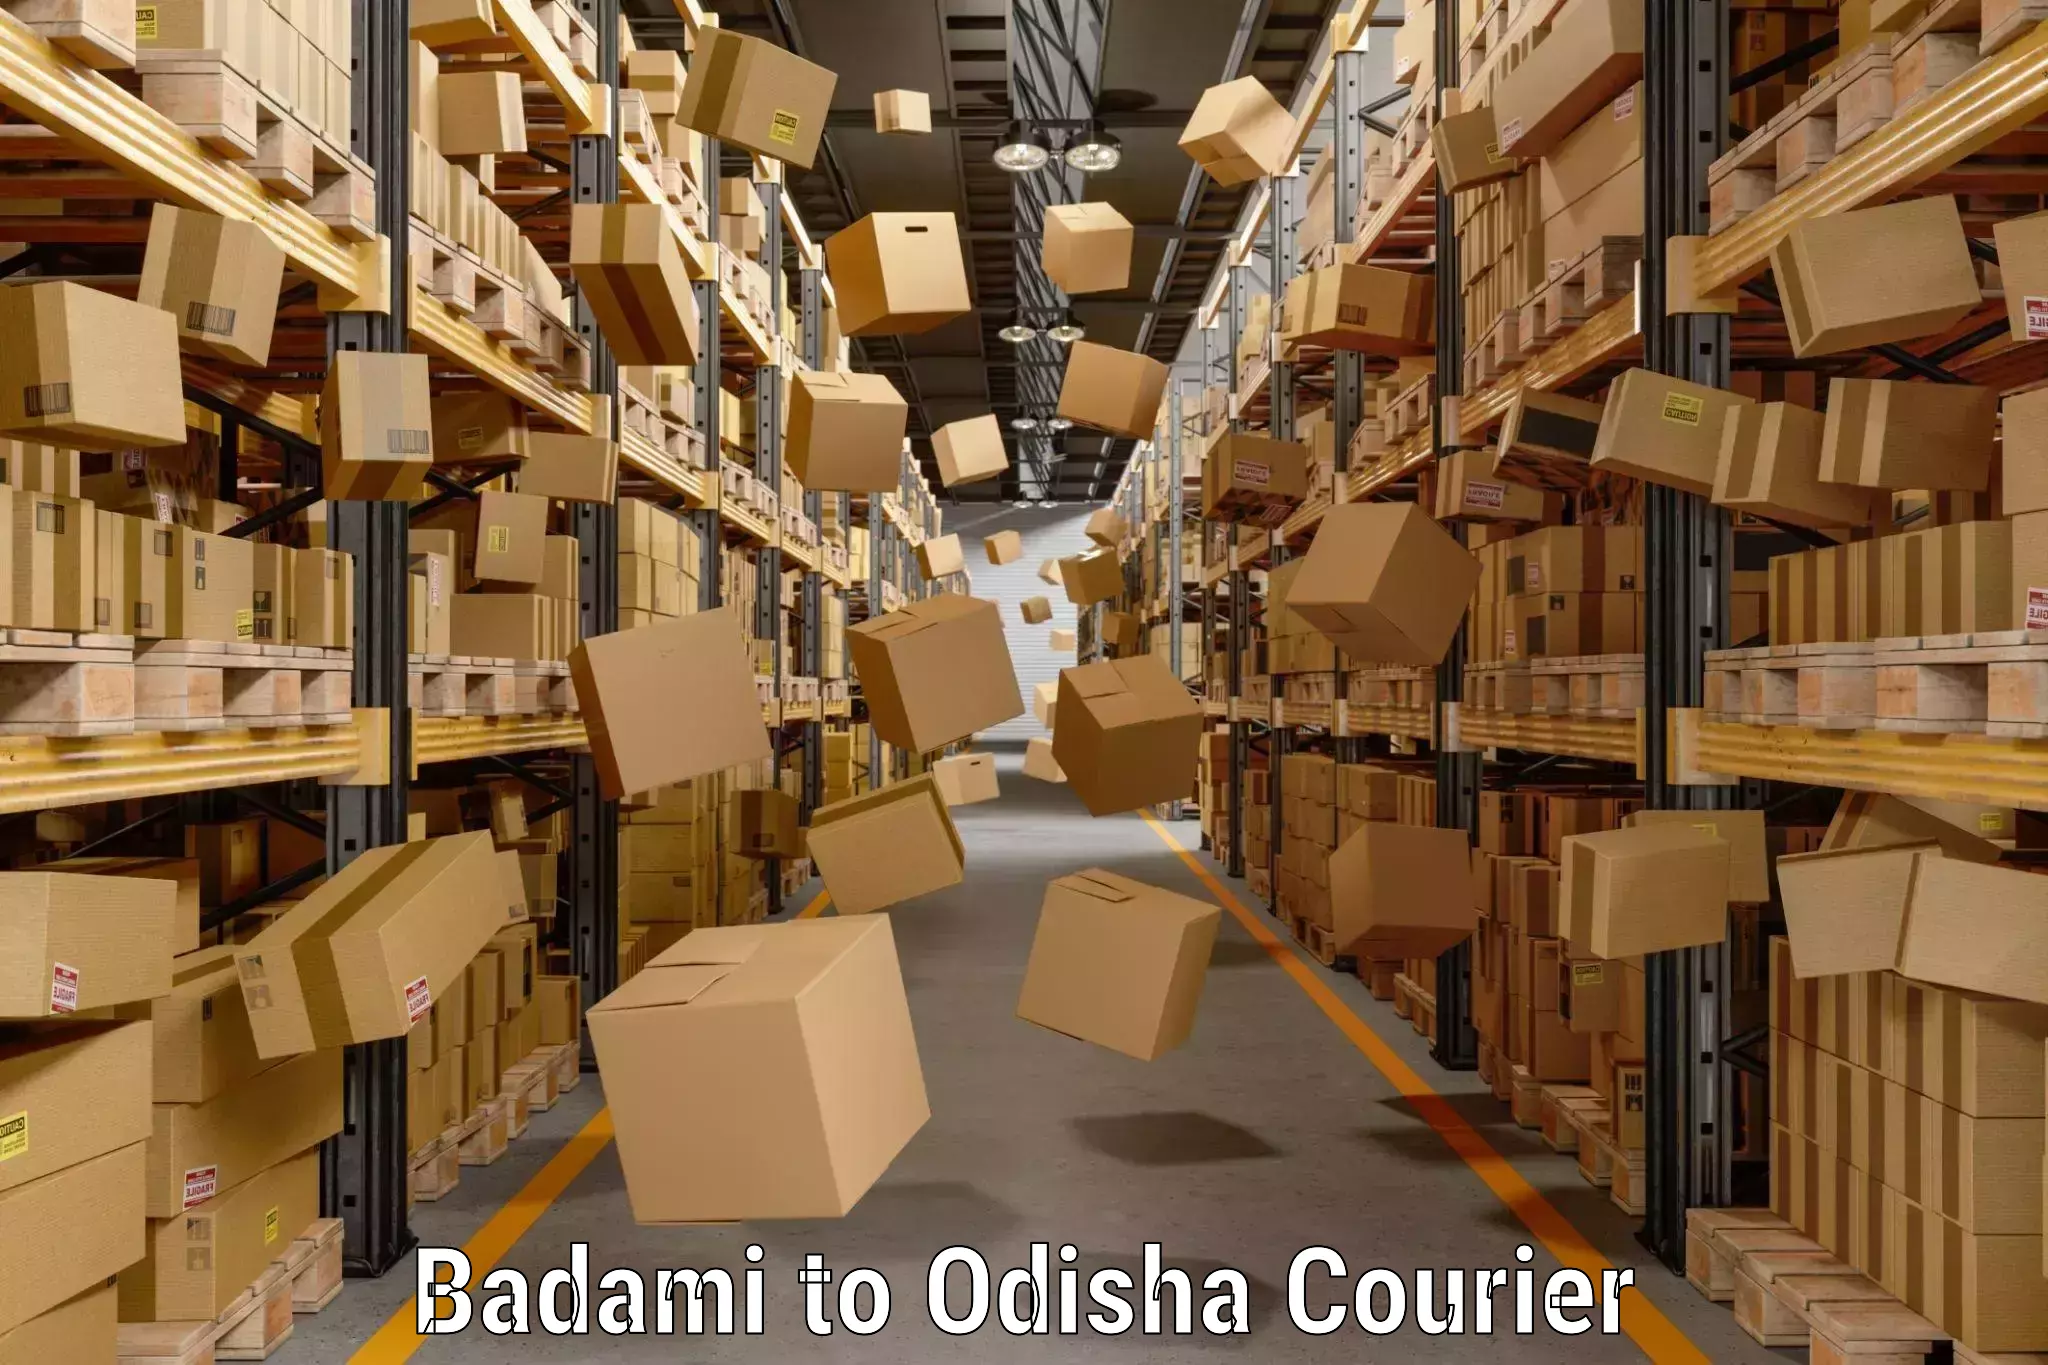 Hassle-free luggage shipping in Badami to Odisha